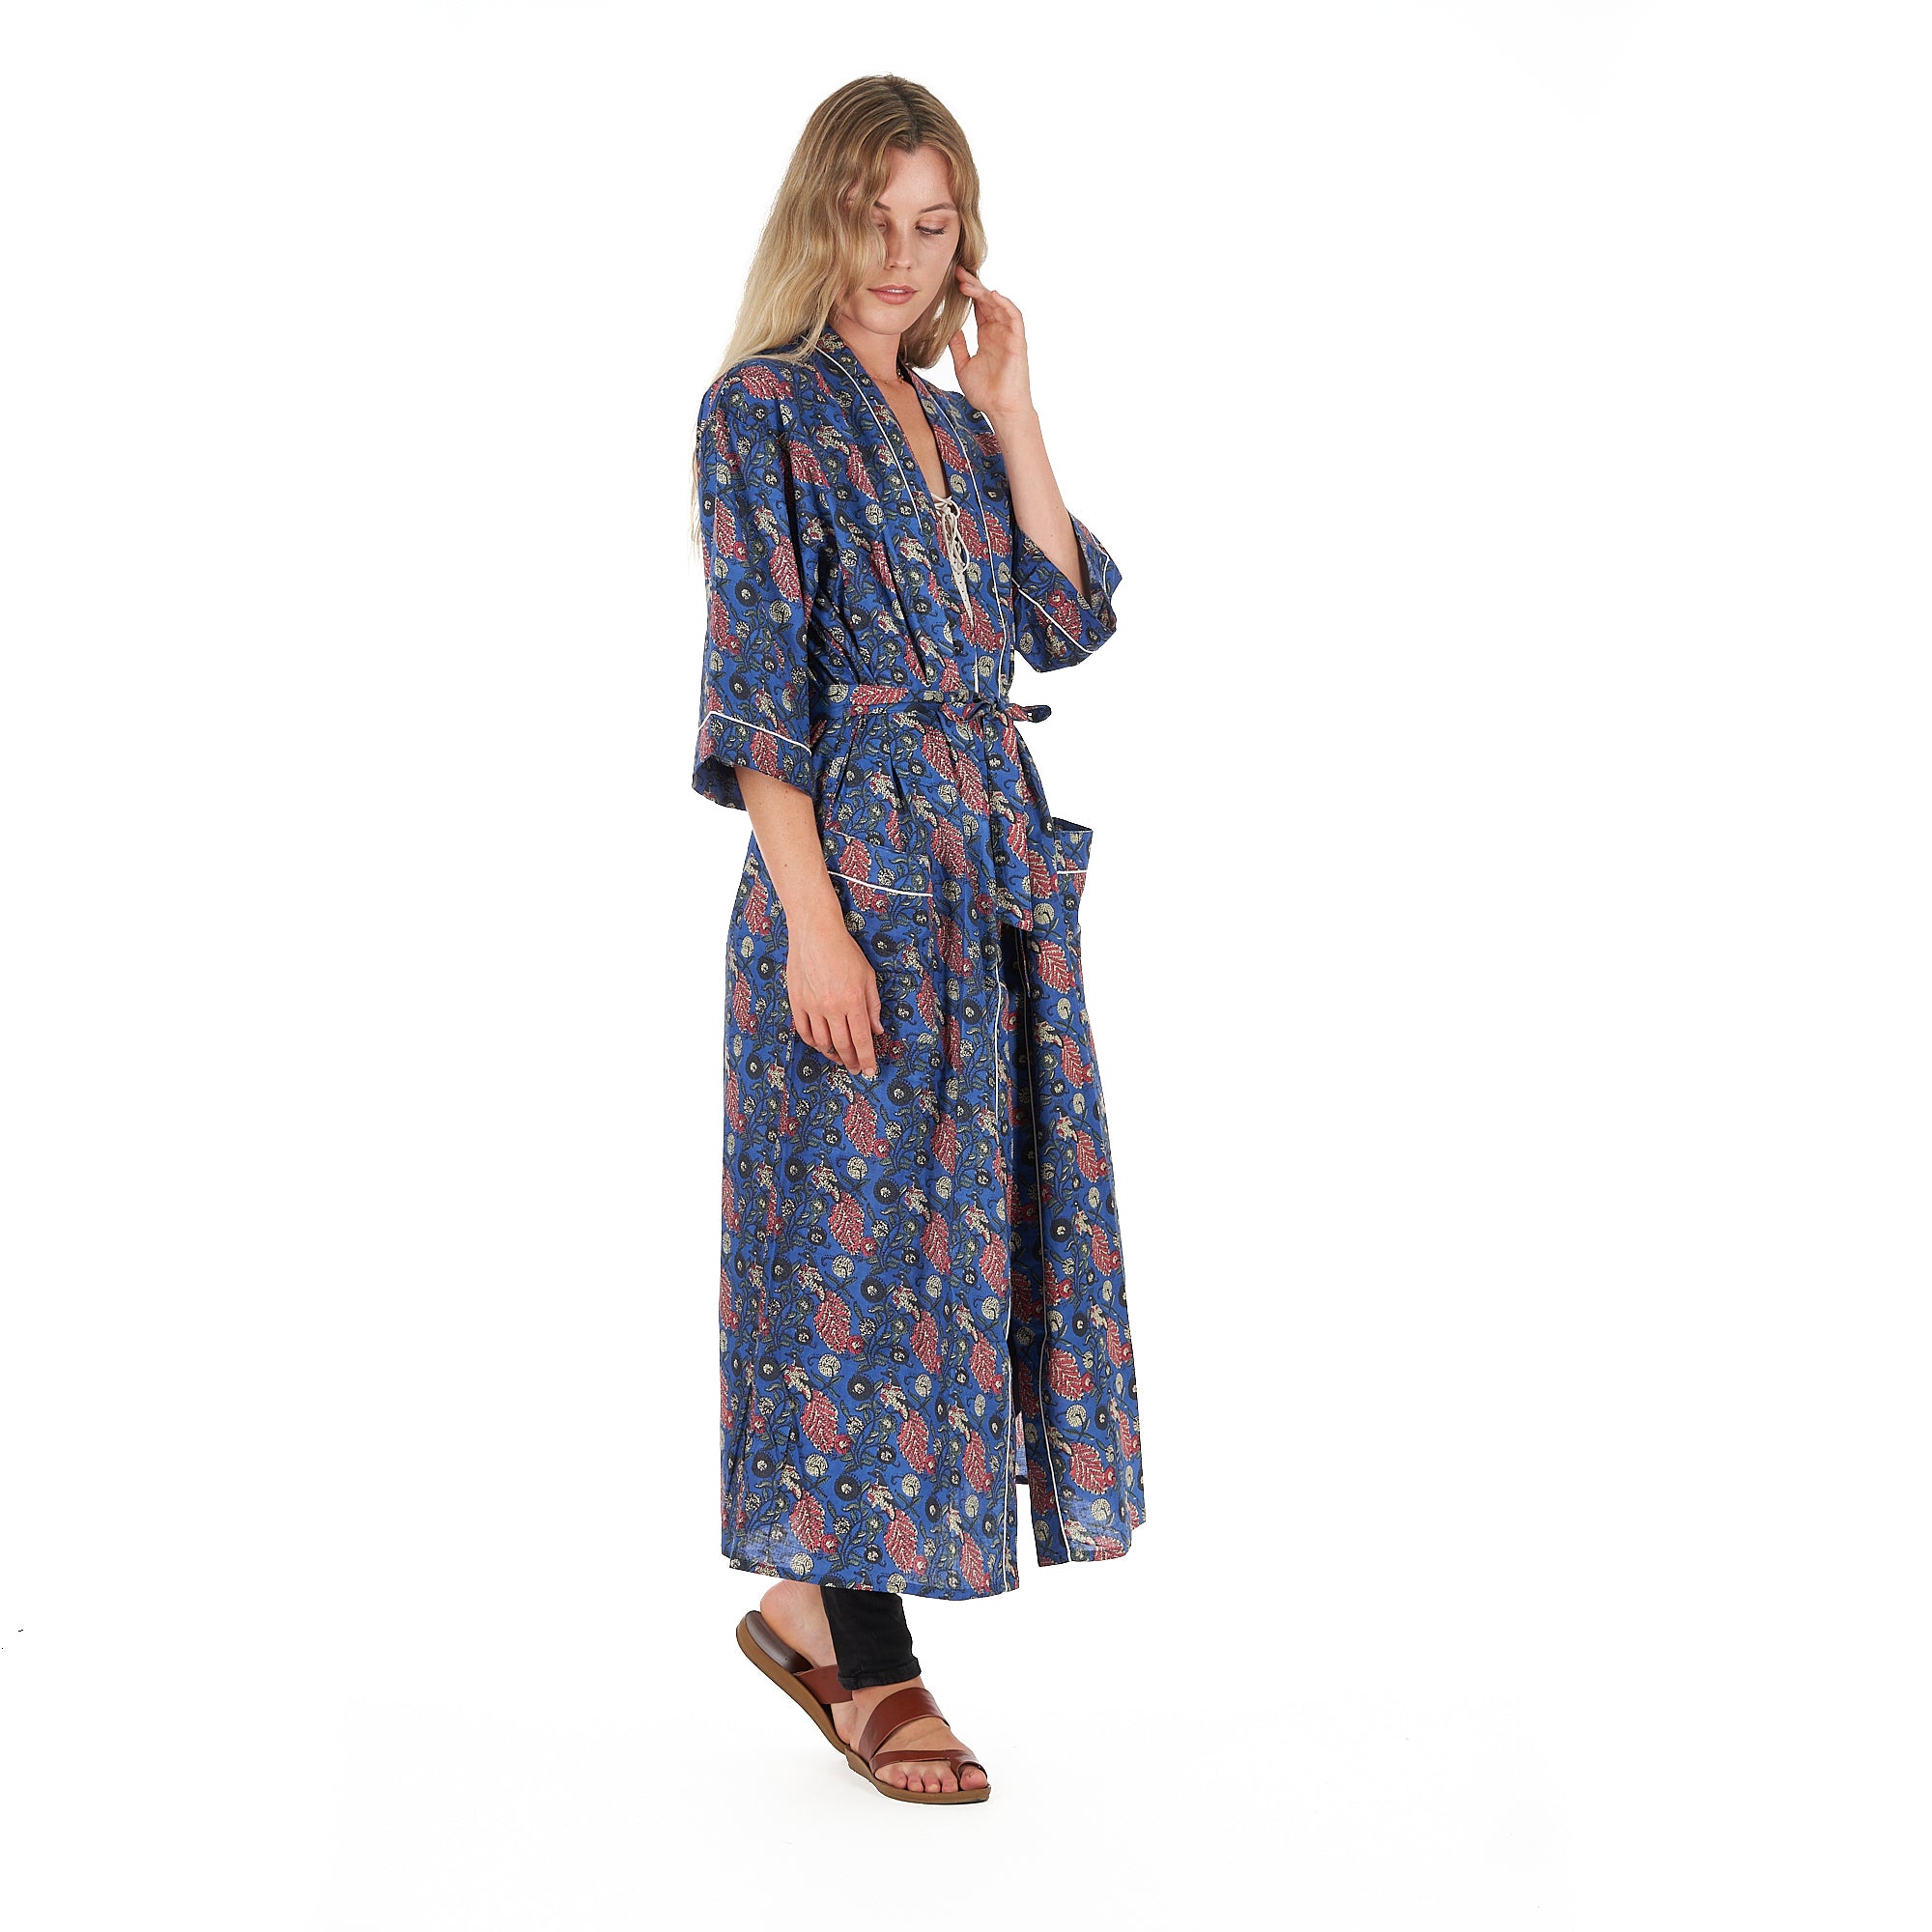 'Serene Style' 100% Cotton Kimono Robe